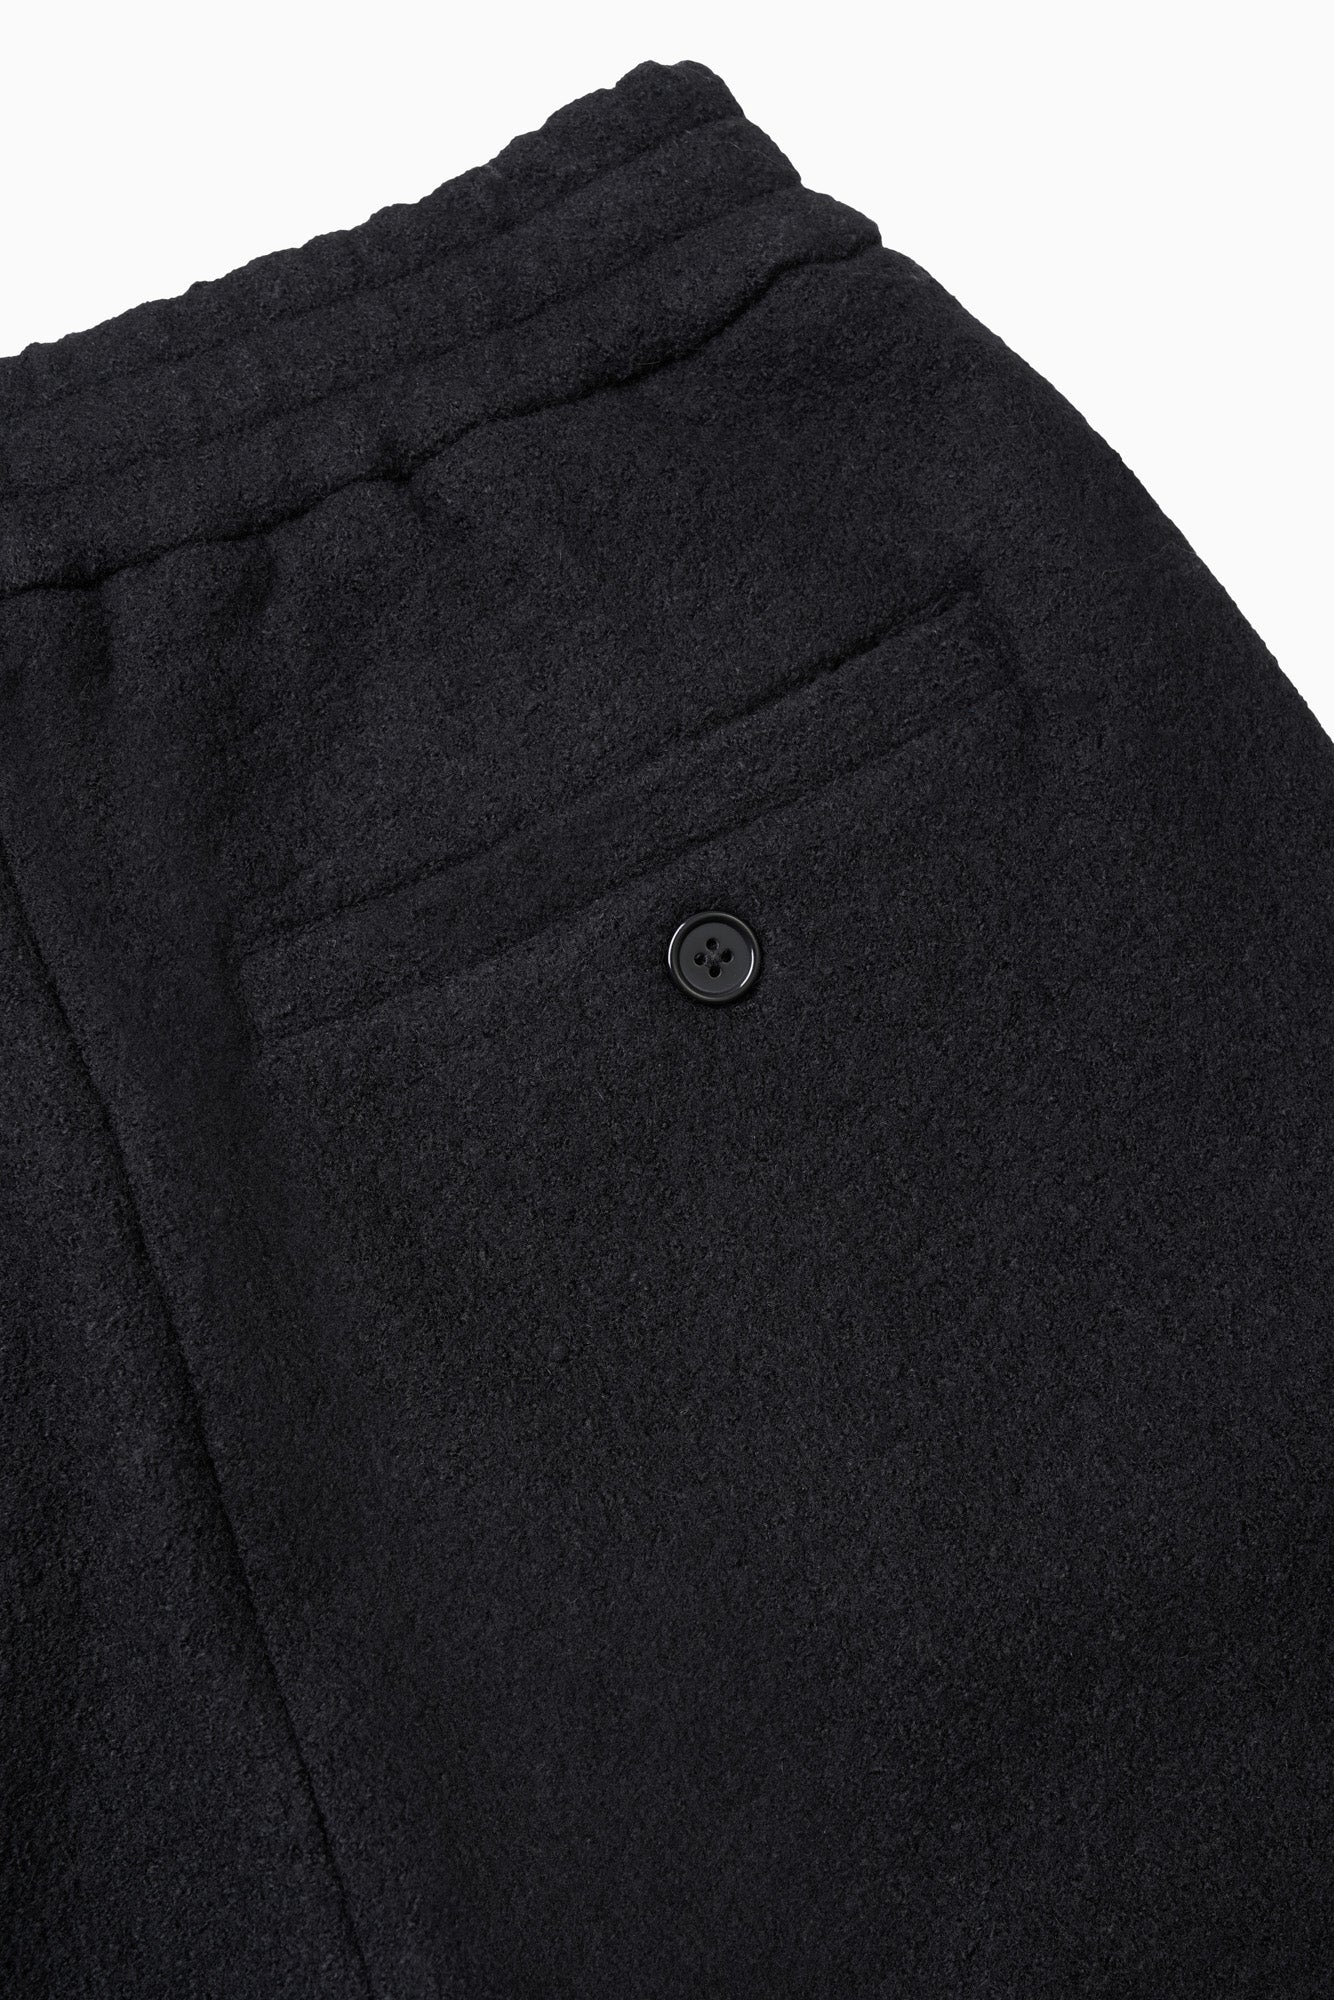 Wool Pant - Black